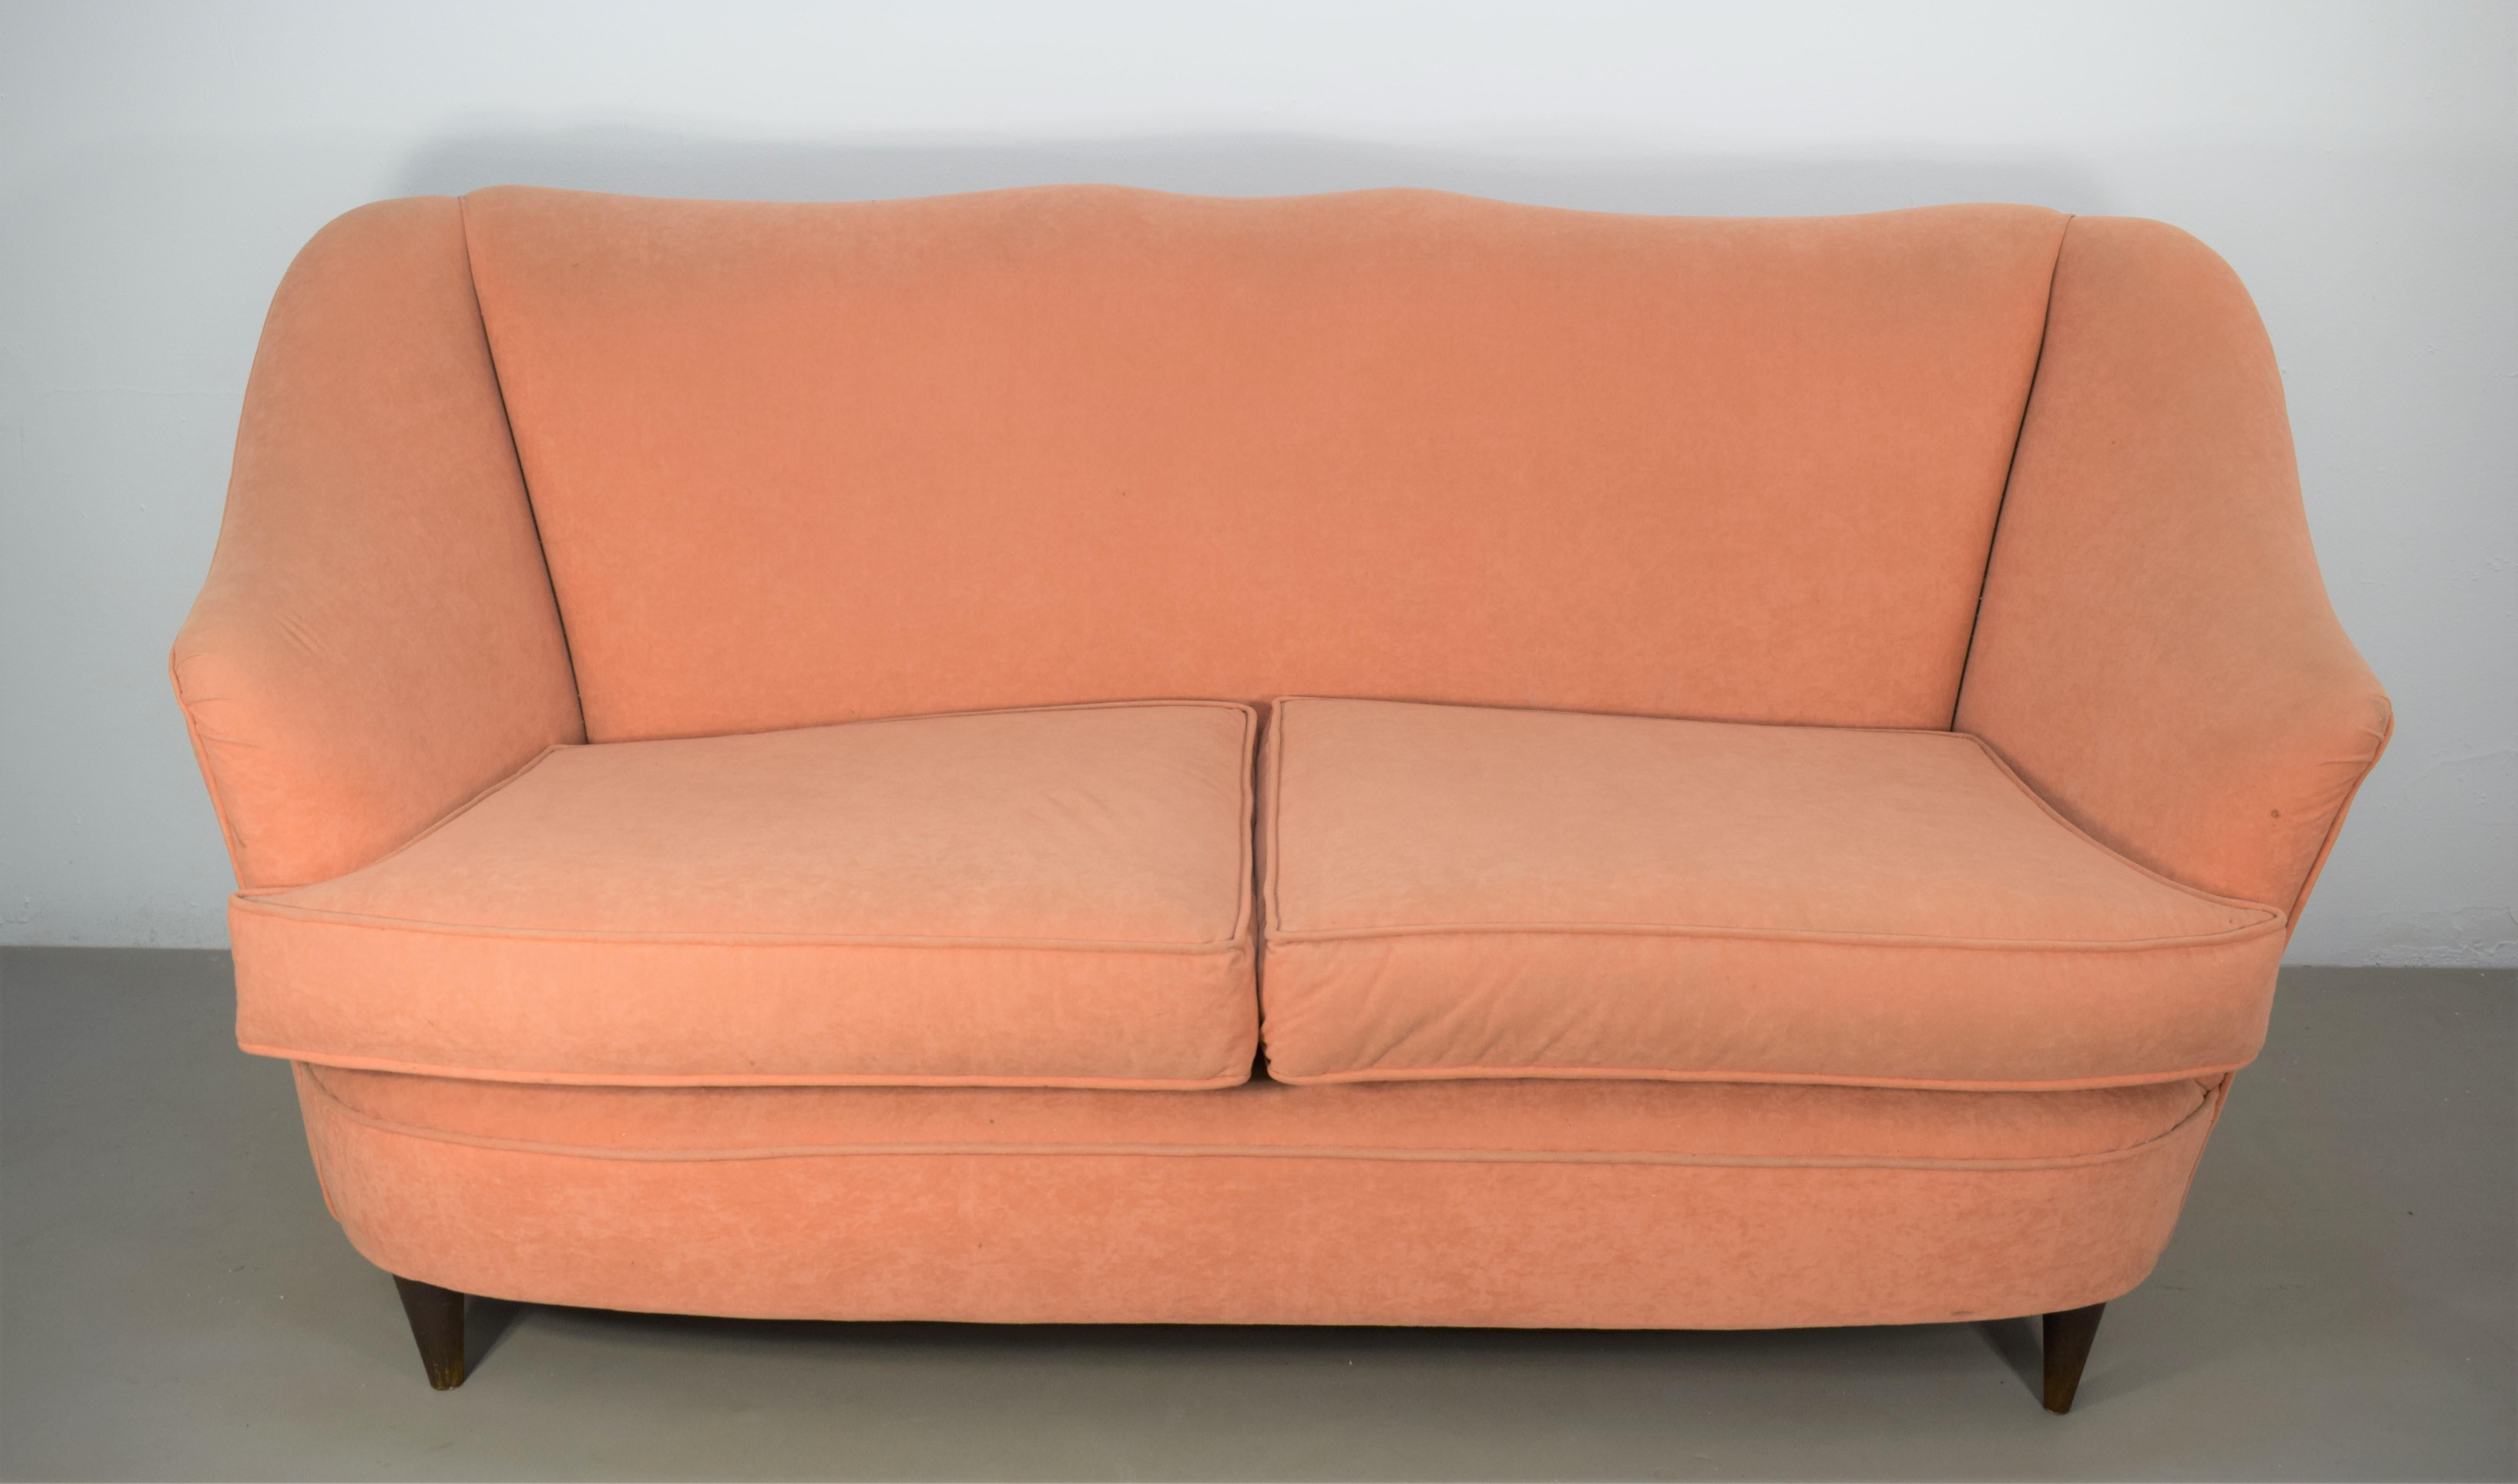 Italian sofa in the style of Gio Ponti for Casa e Giardino, 1950s.

Dimensions: H= 82 cm; W= 160 cm; D= 65 cm; H seat= 45 cm.